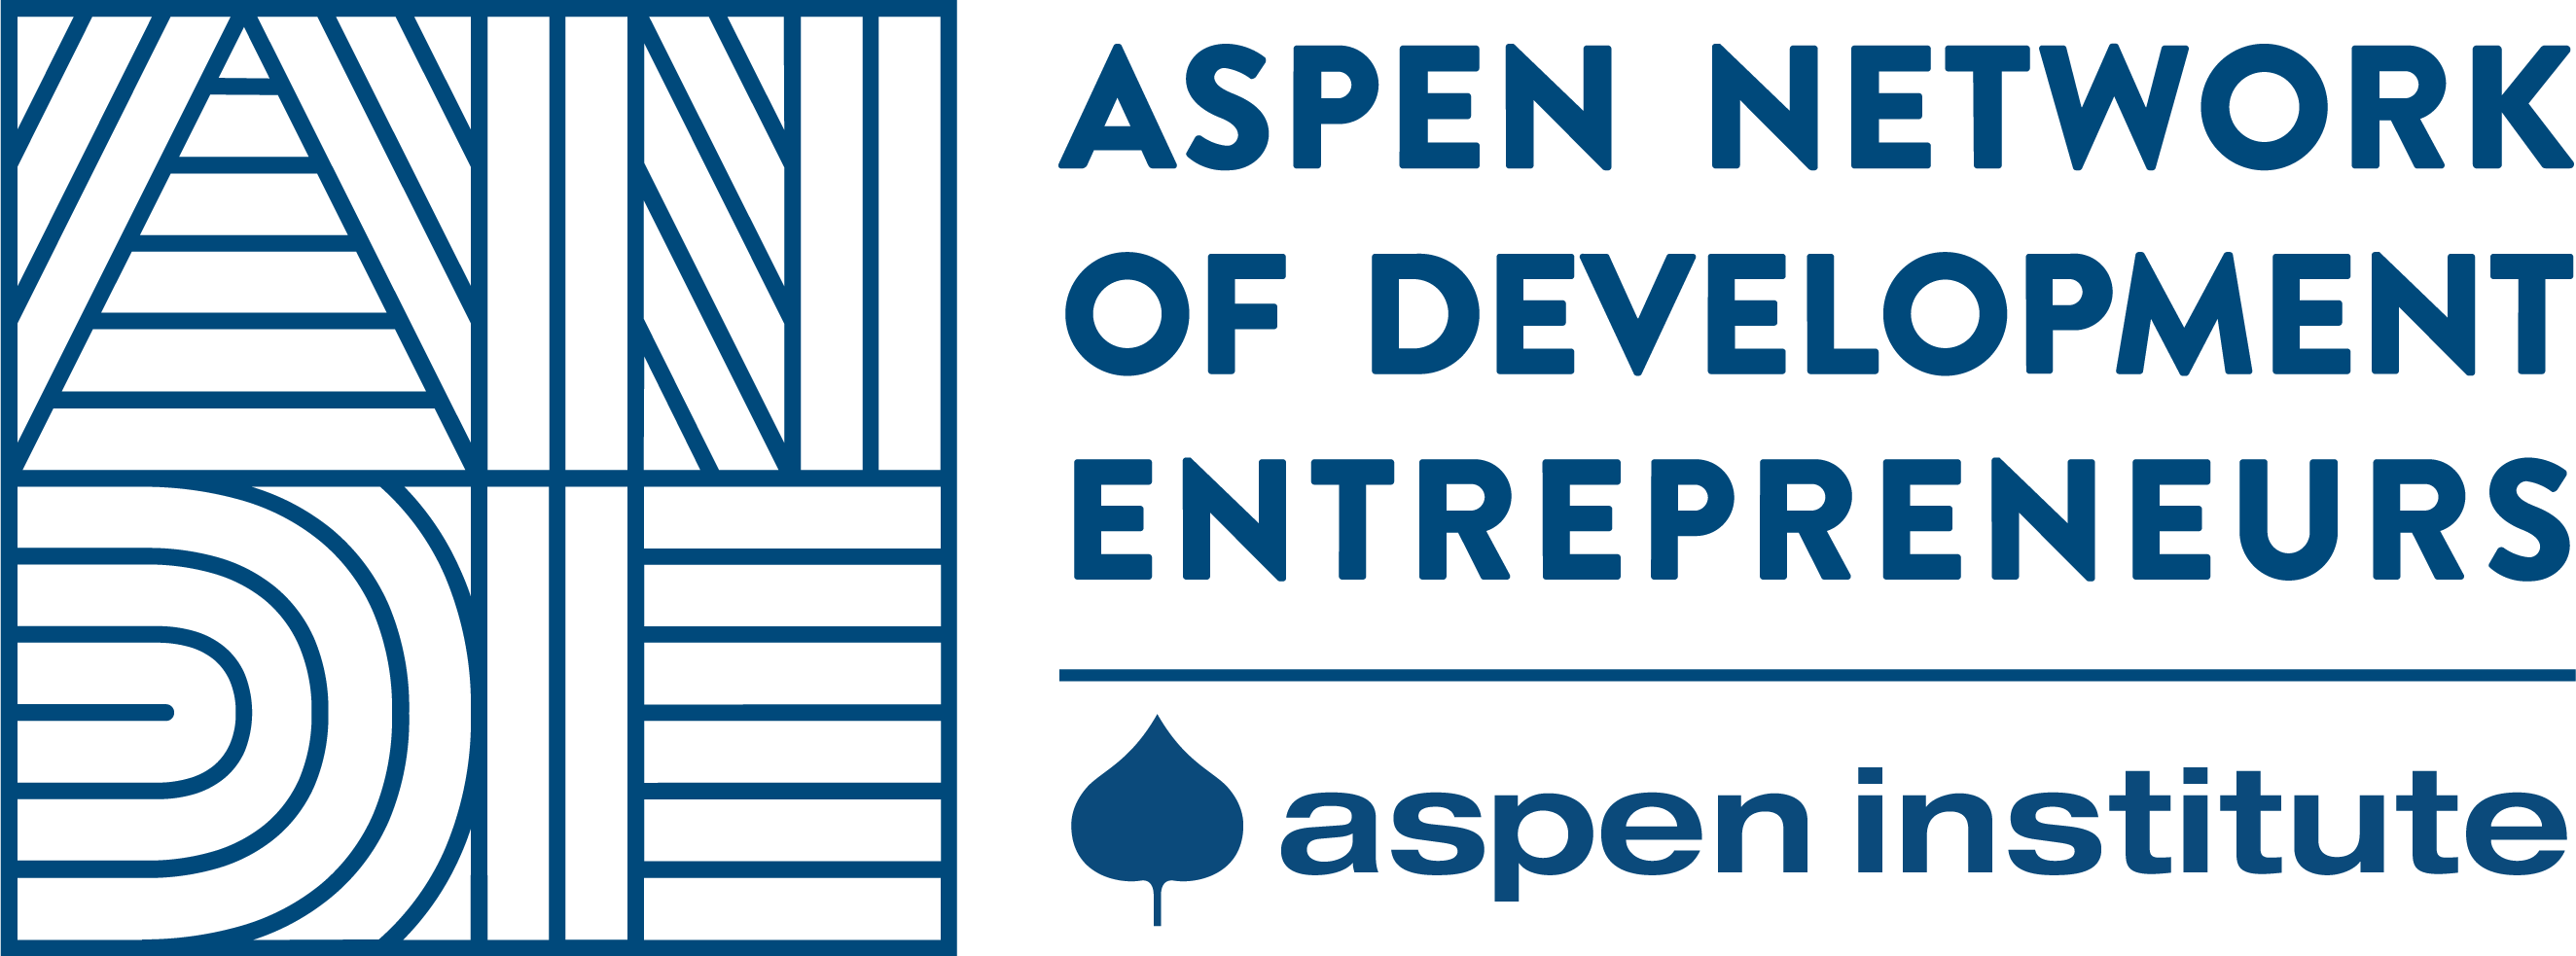 Logo da Aspen Network of Development Entrepreneurs